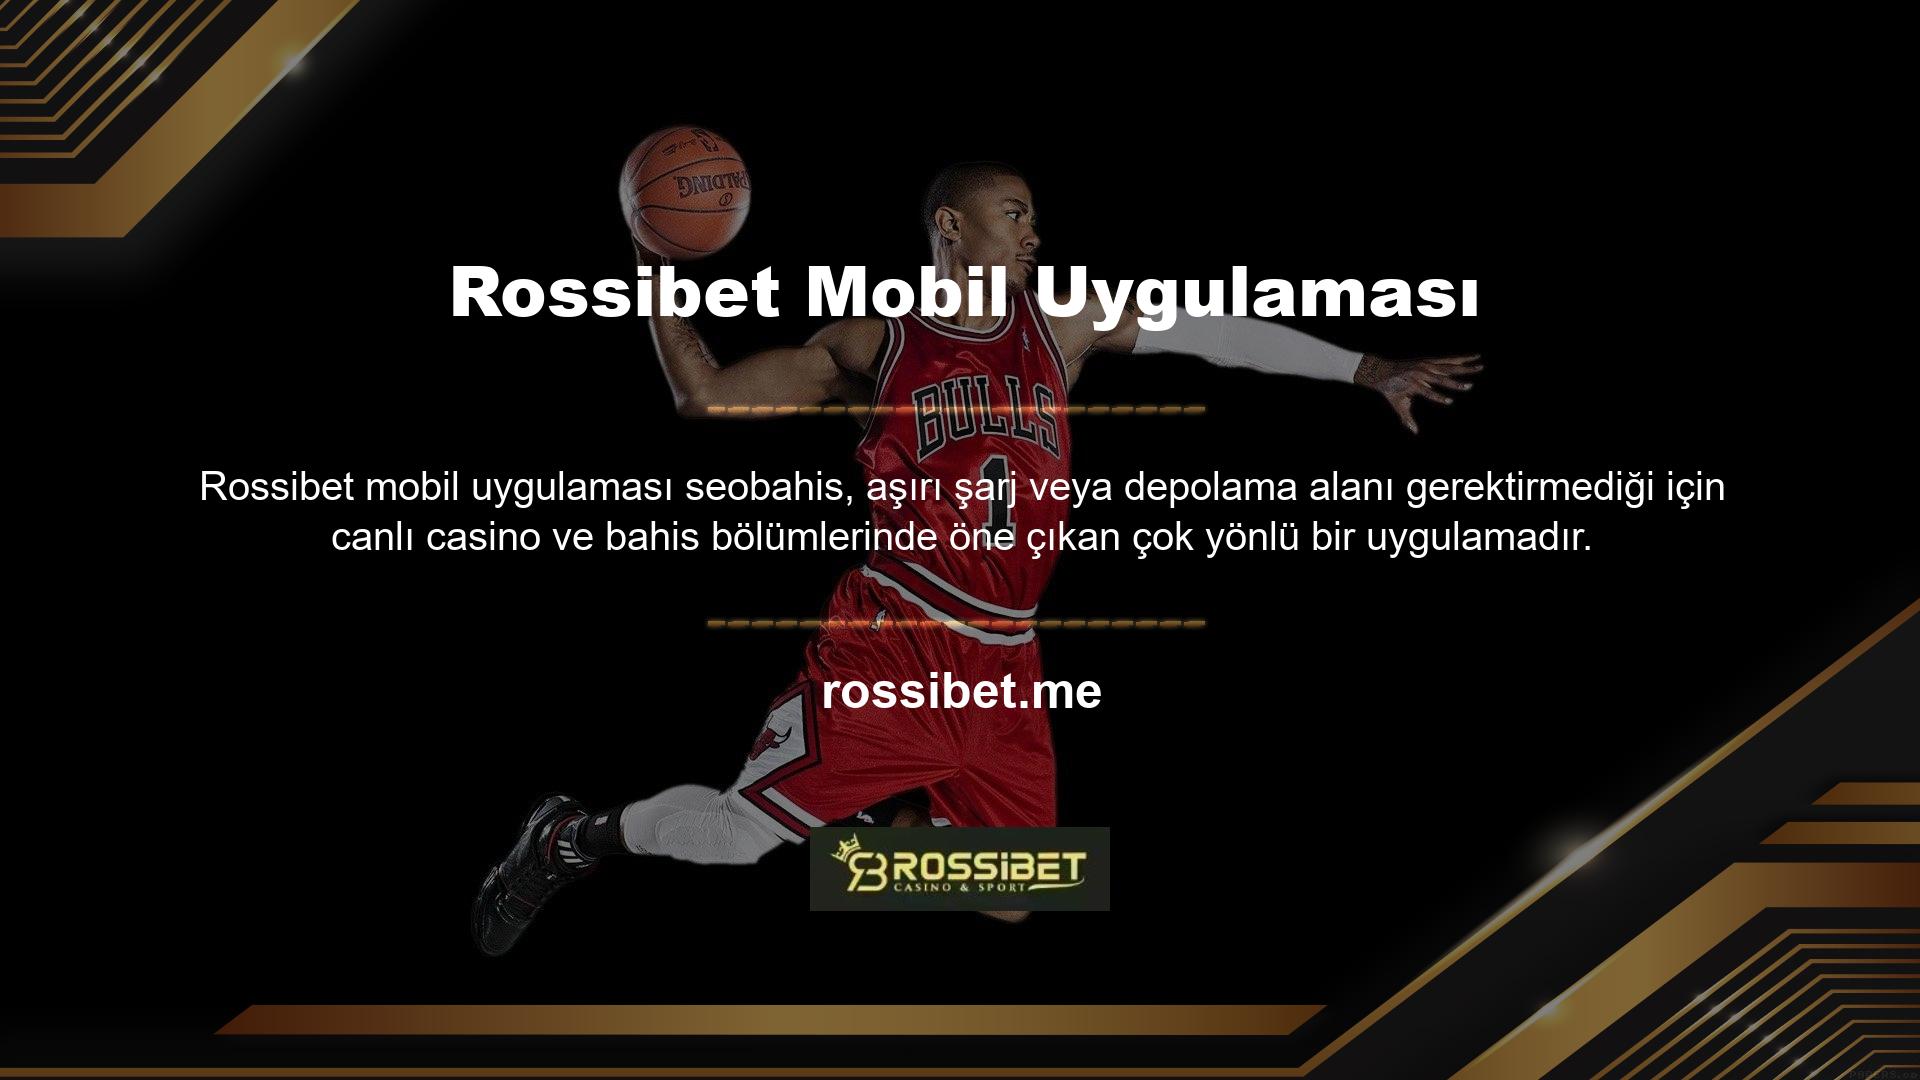 Rossibet mobil uygulaması için bazı oyunlar önerebilir misiniz? Led Zeplin